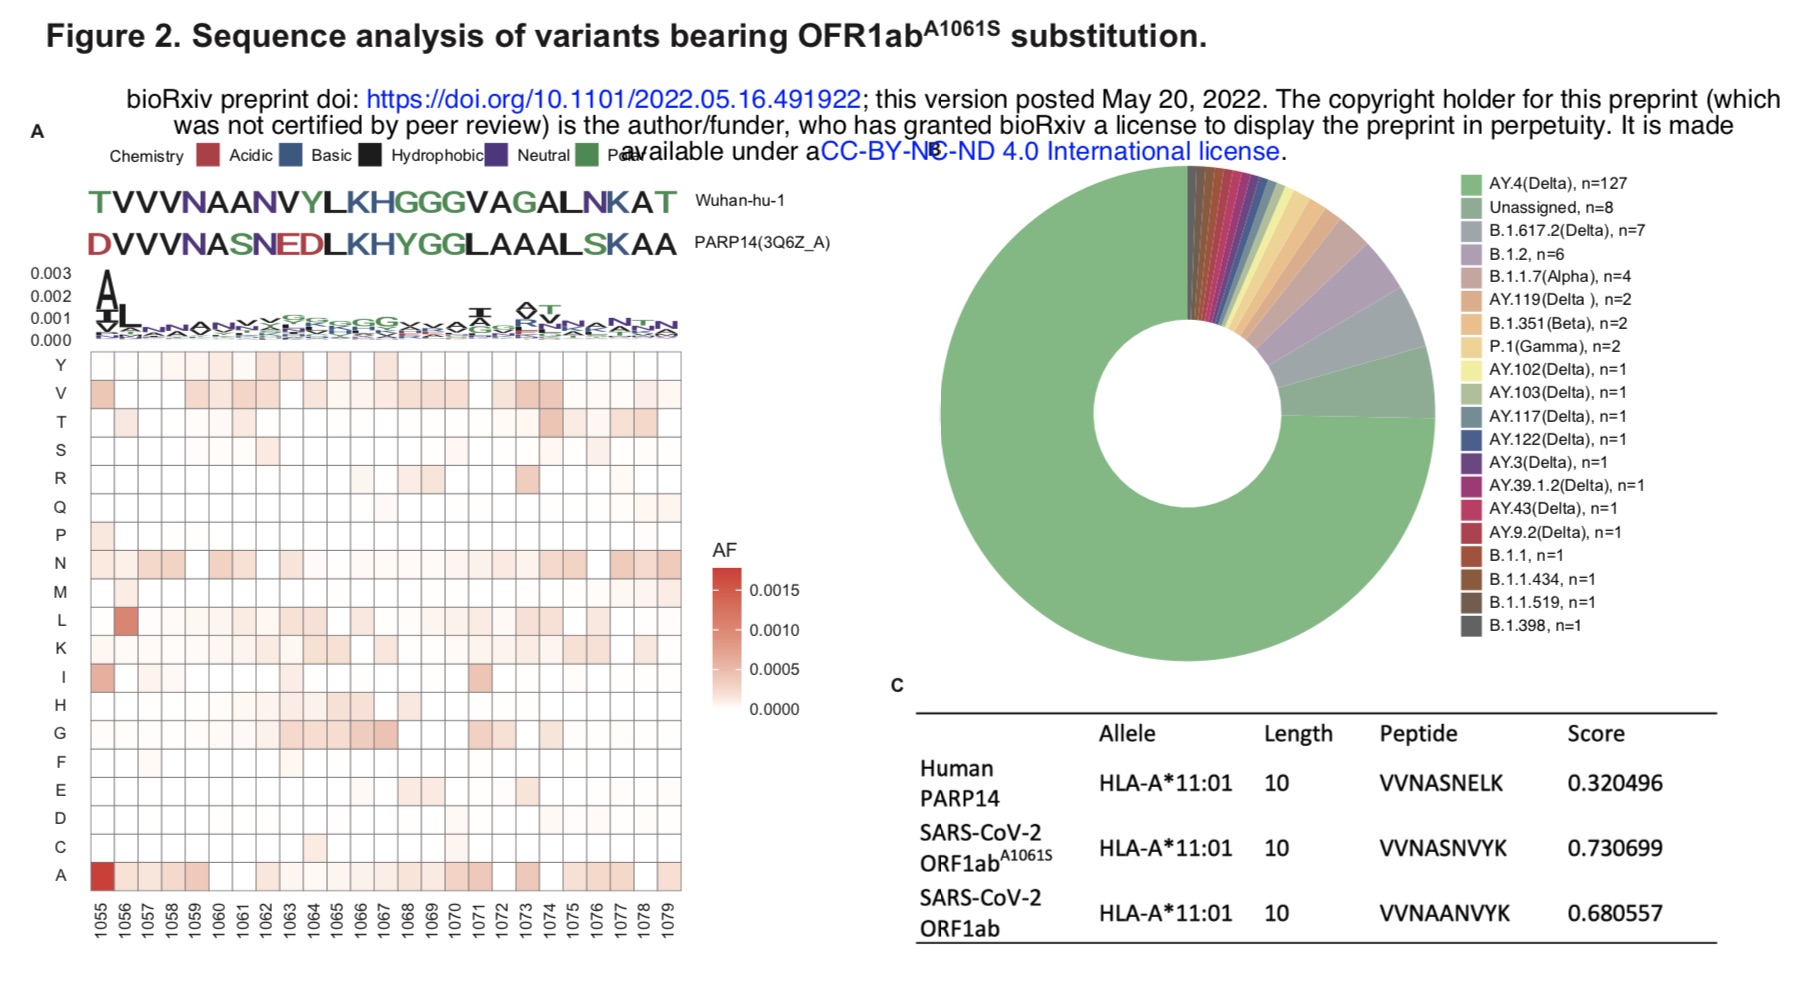 基于OFR1ab^A1061S替换的变异体序列分析。